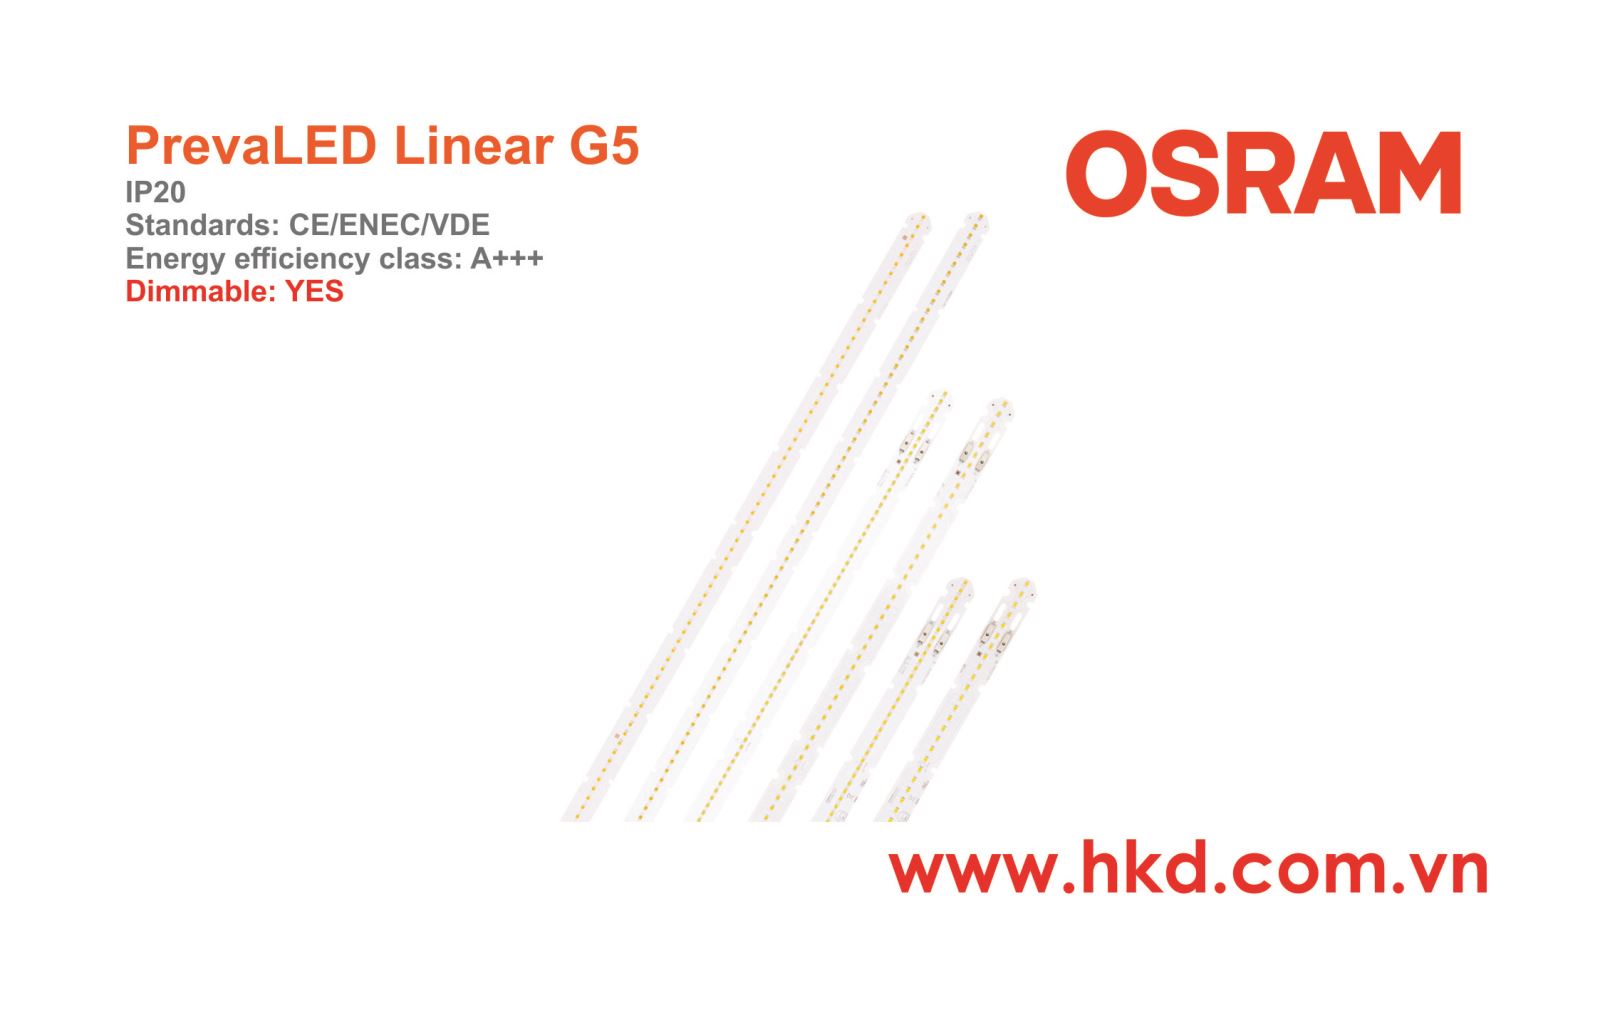 Đèn LED thanh PrevaLED Linear G5 OSRAM